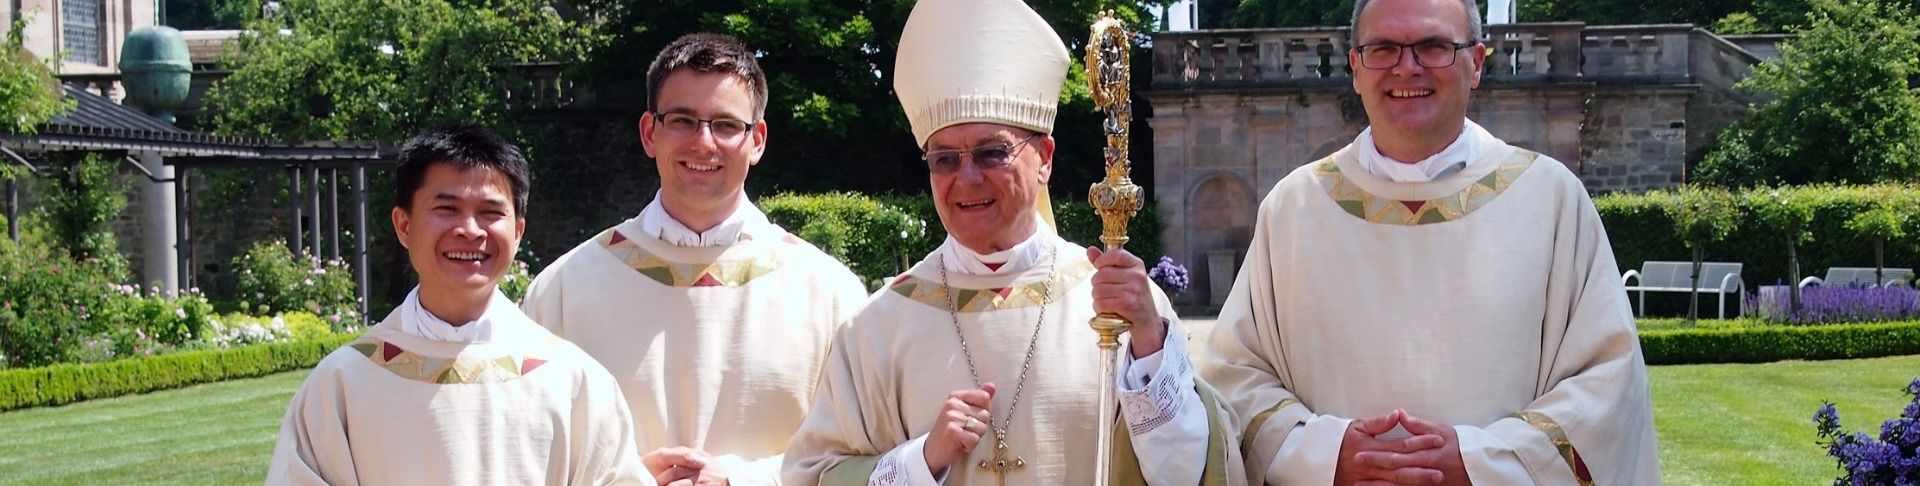 Bischof Algermissen weihte drei Diakone zu Priestern